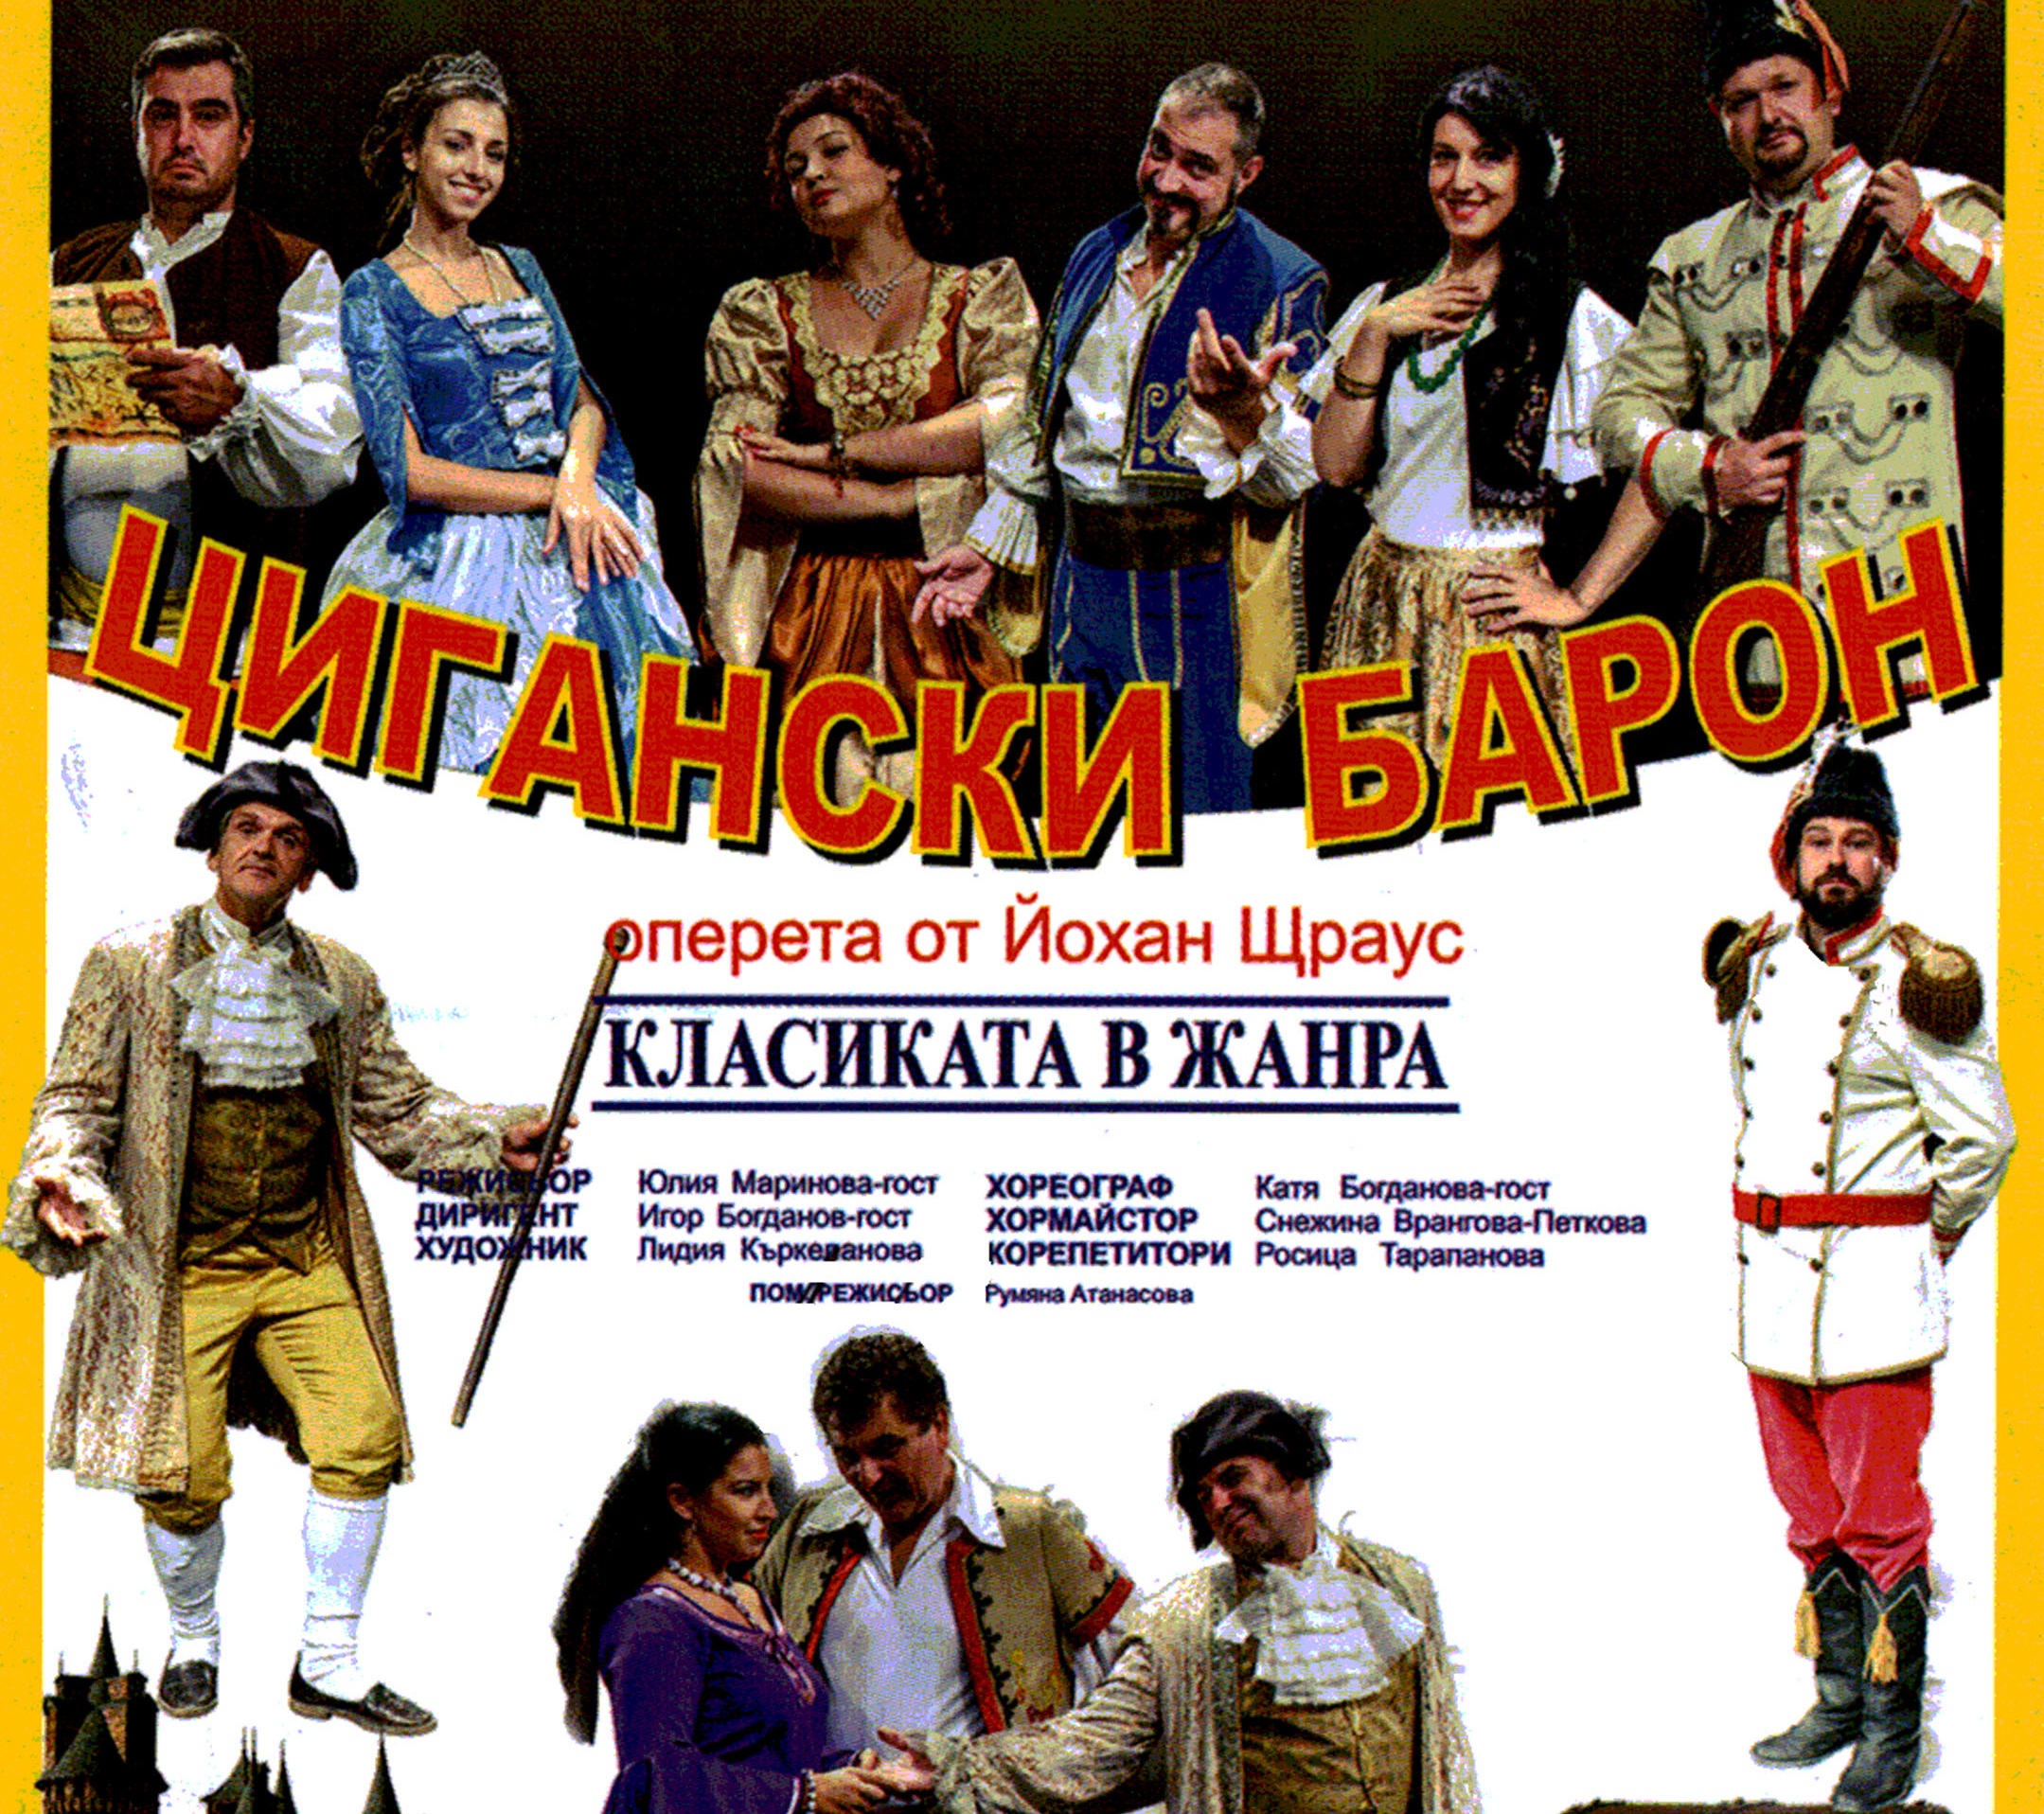 Оперетата „Цигански барон“ представят днес в Левски